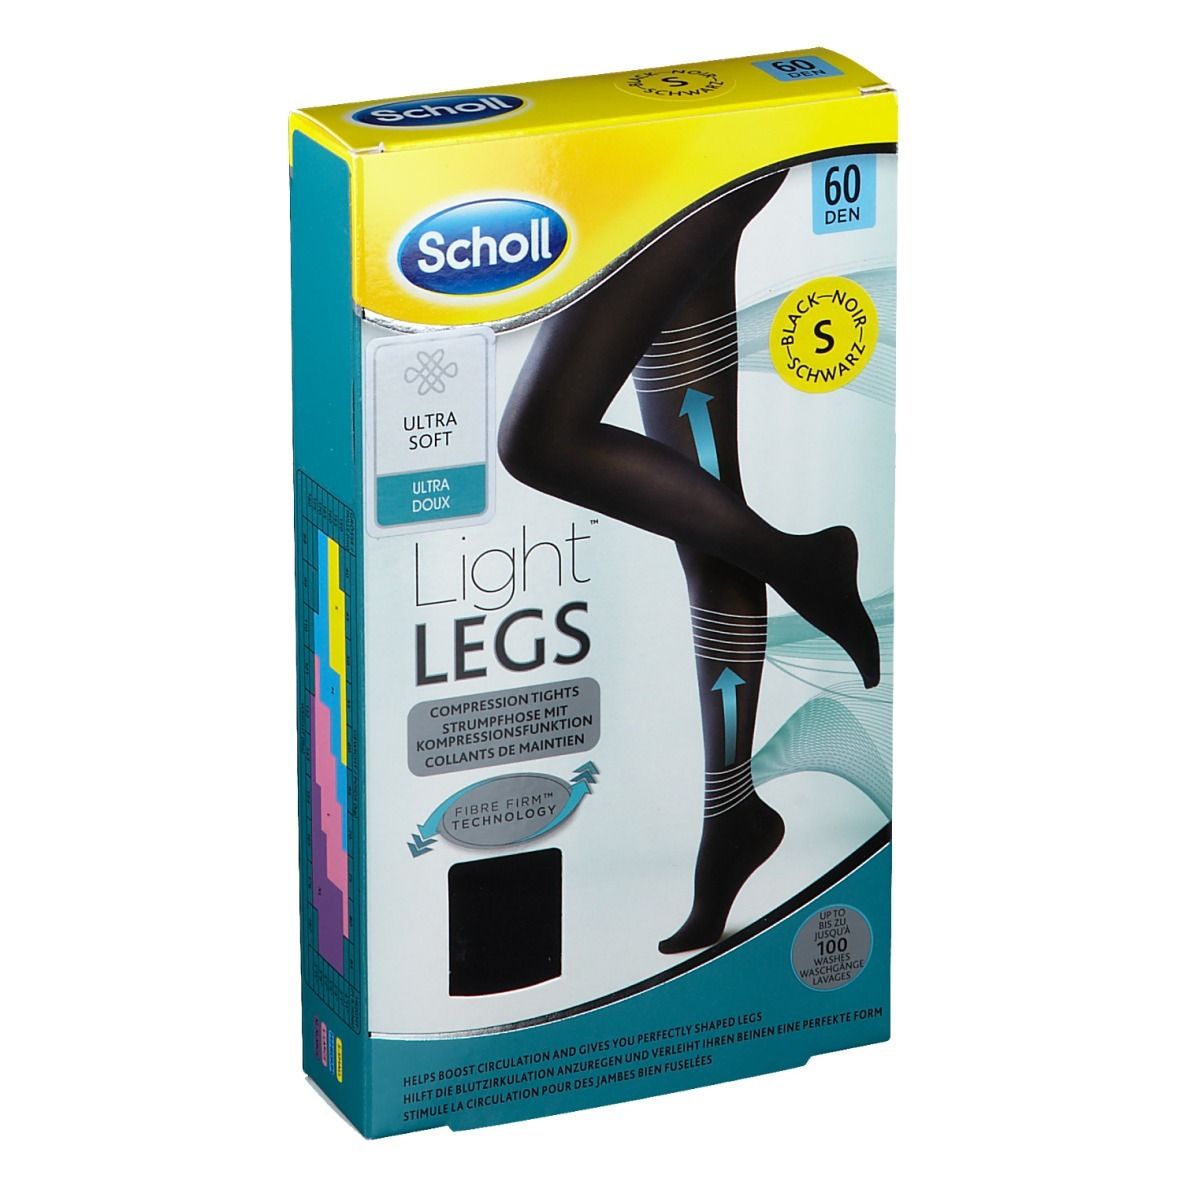 Scholl Light LEGS 60 den schwarz S